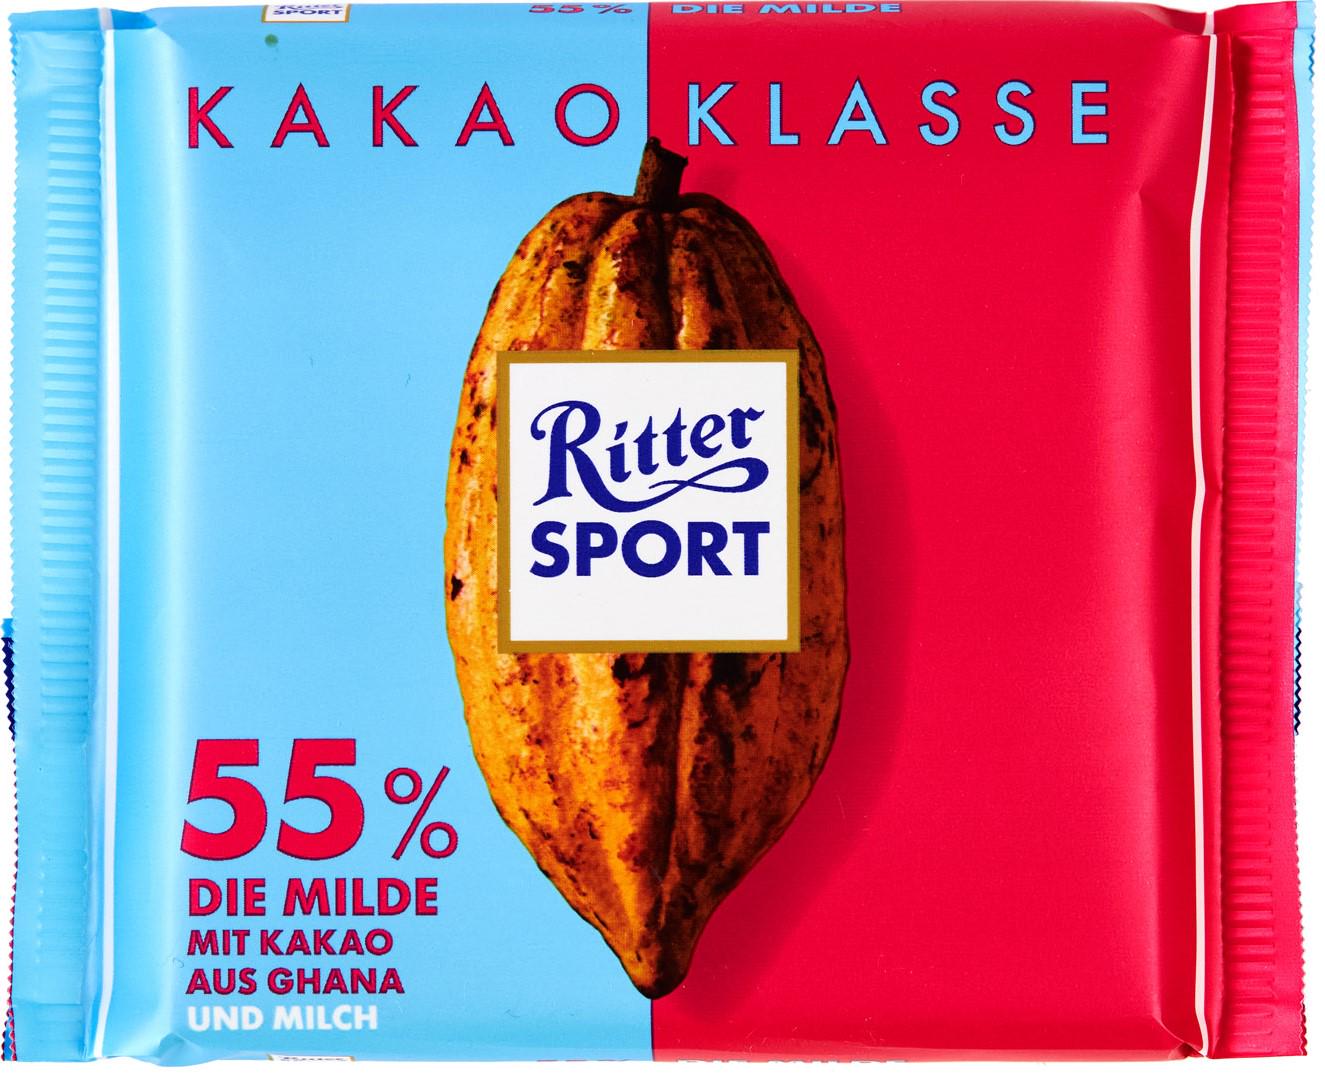 Шоколад Ritter Sport 55% Kakao Klasse Die Milde 100 г (11110)